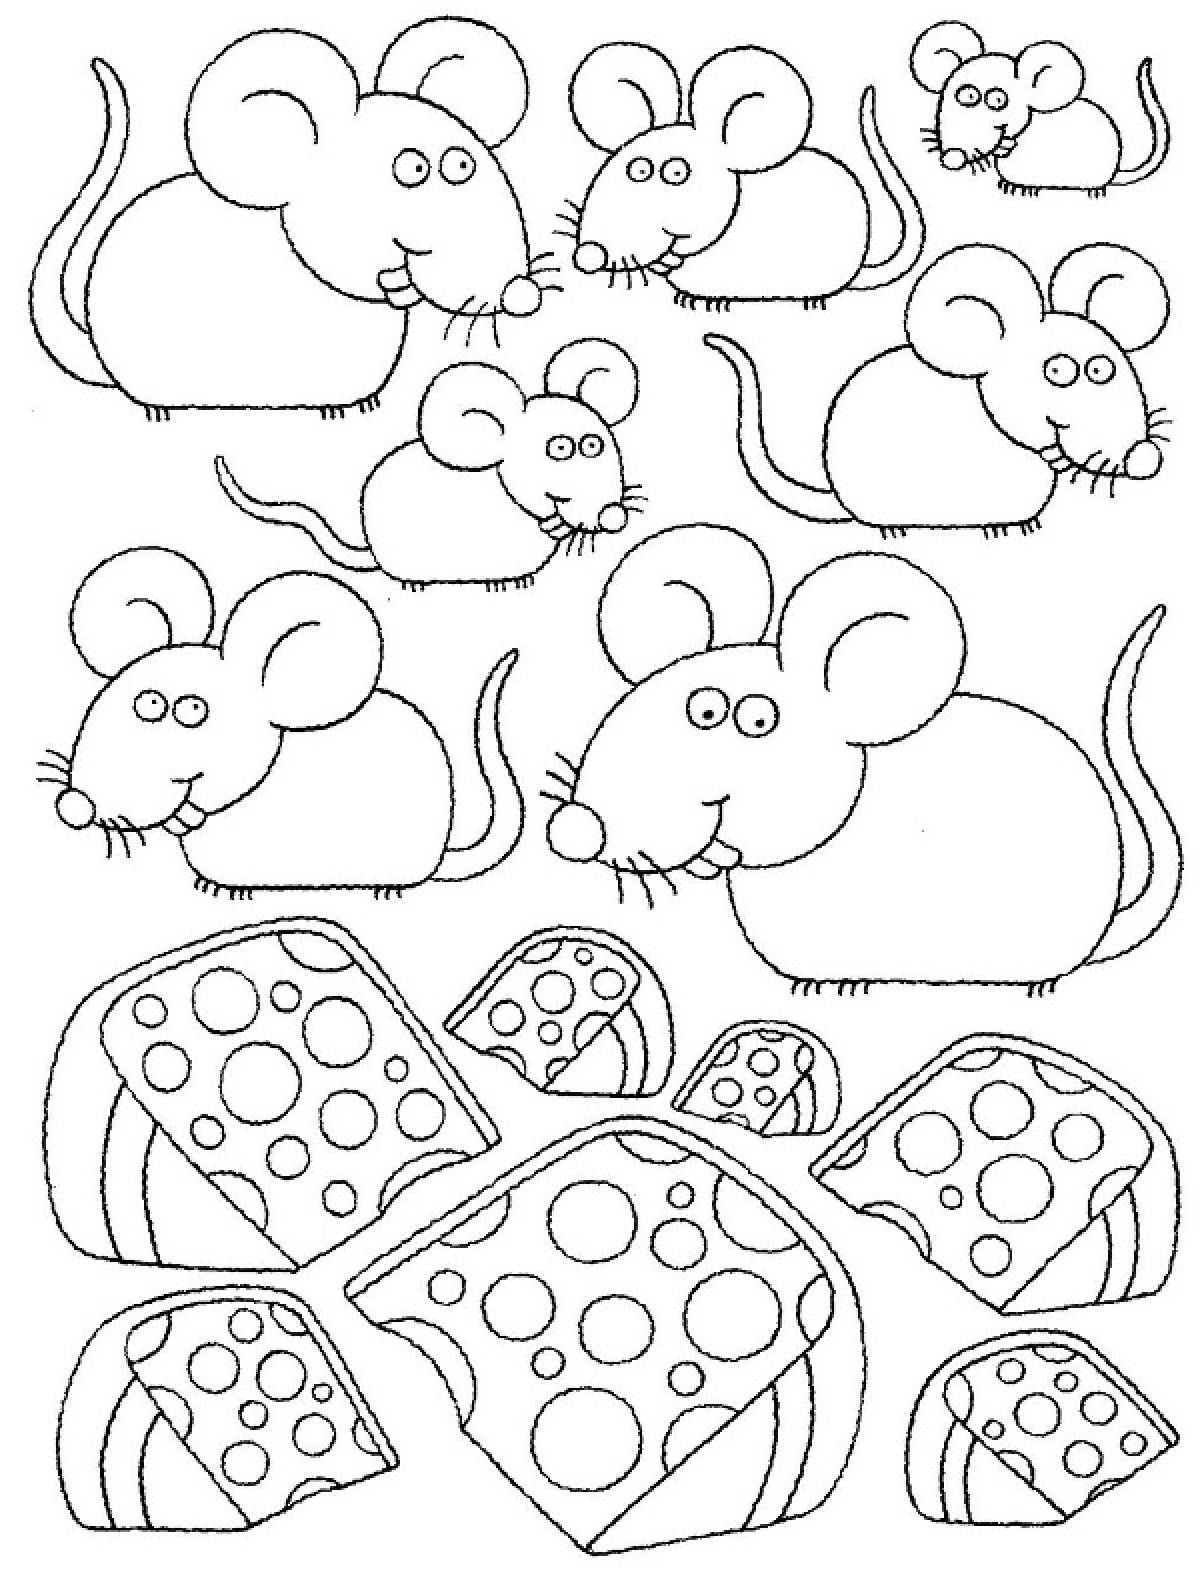 Mice love cheese